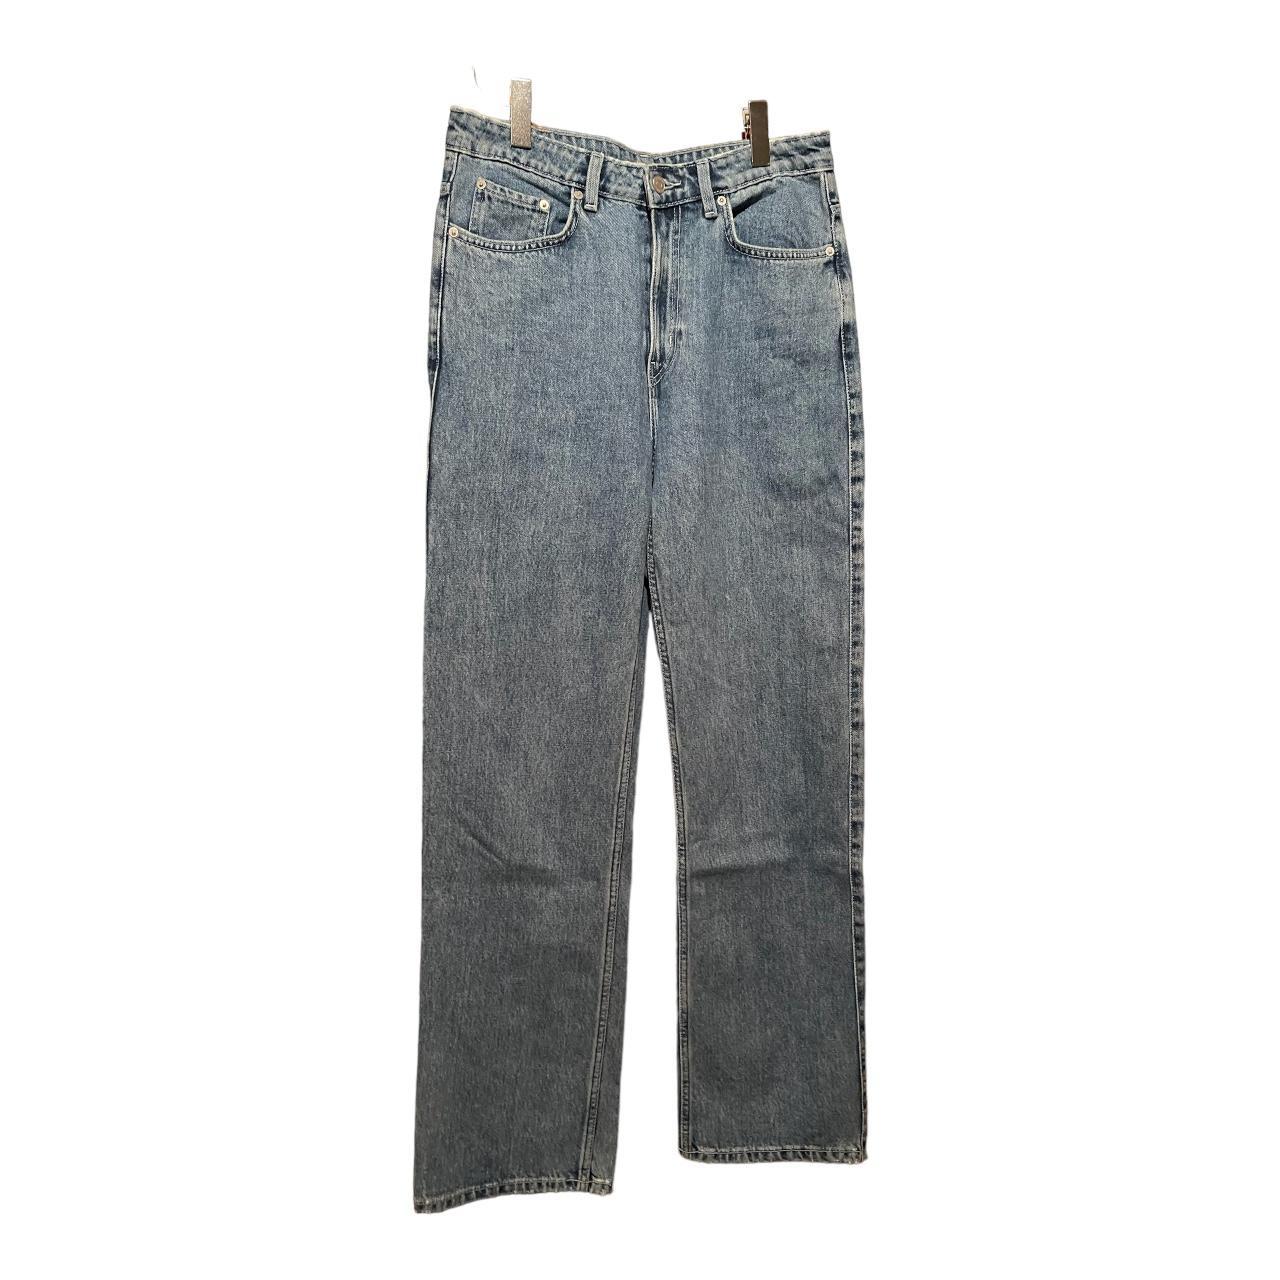 lauren conrad jeans size 4 #denim #jeans #stonewash - Depop